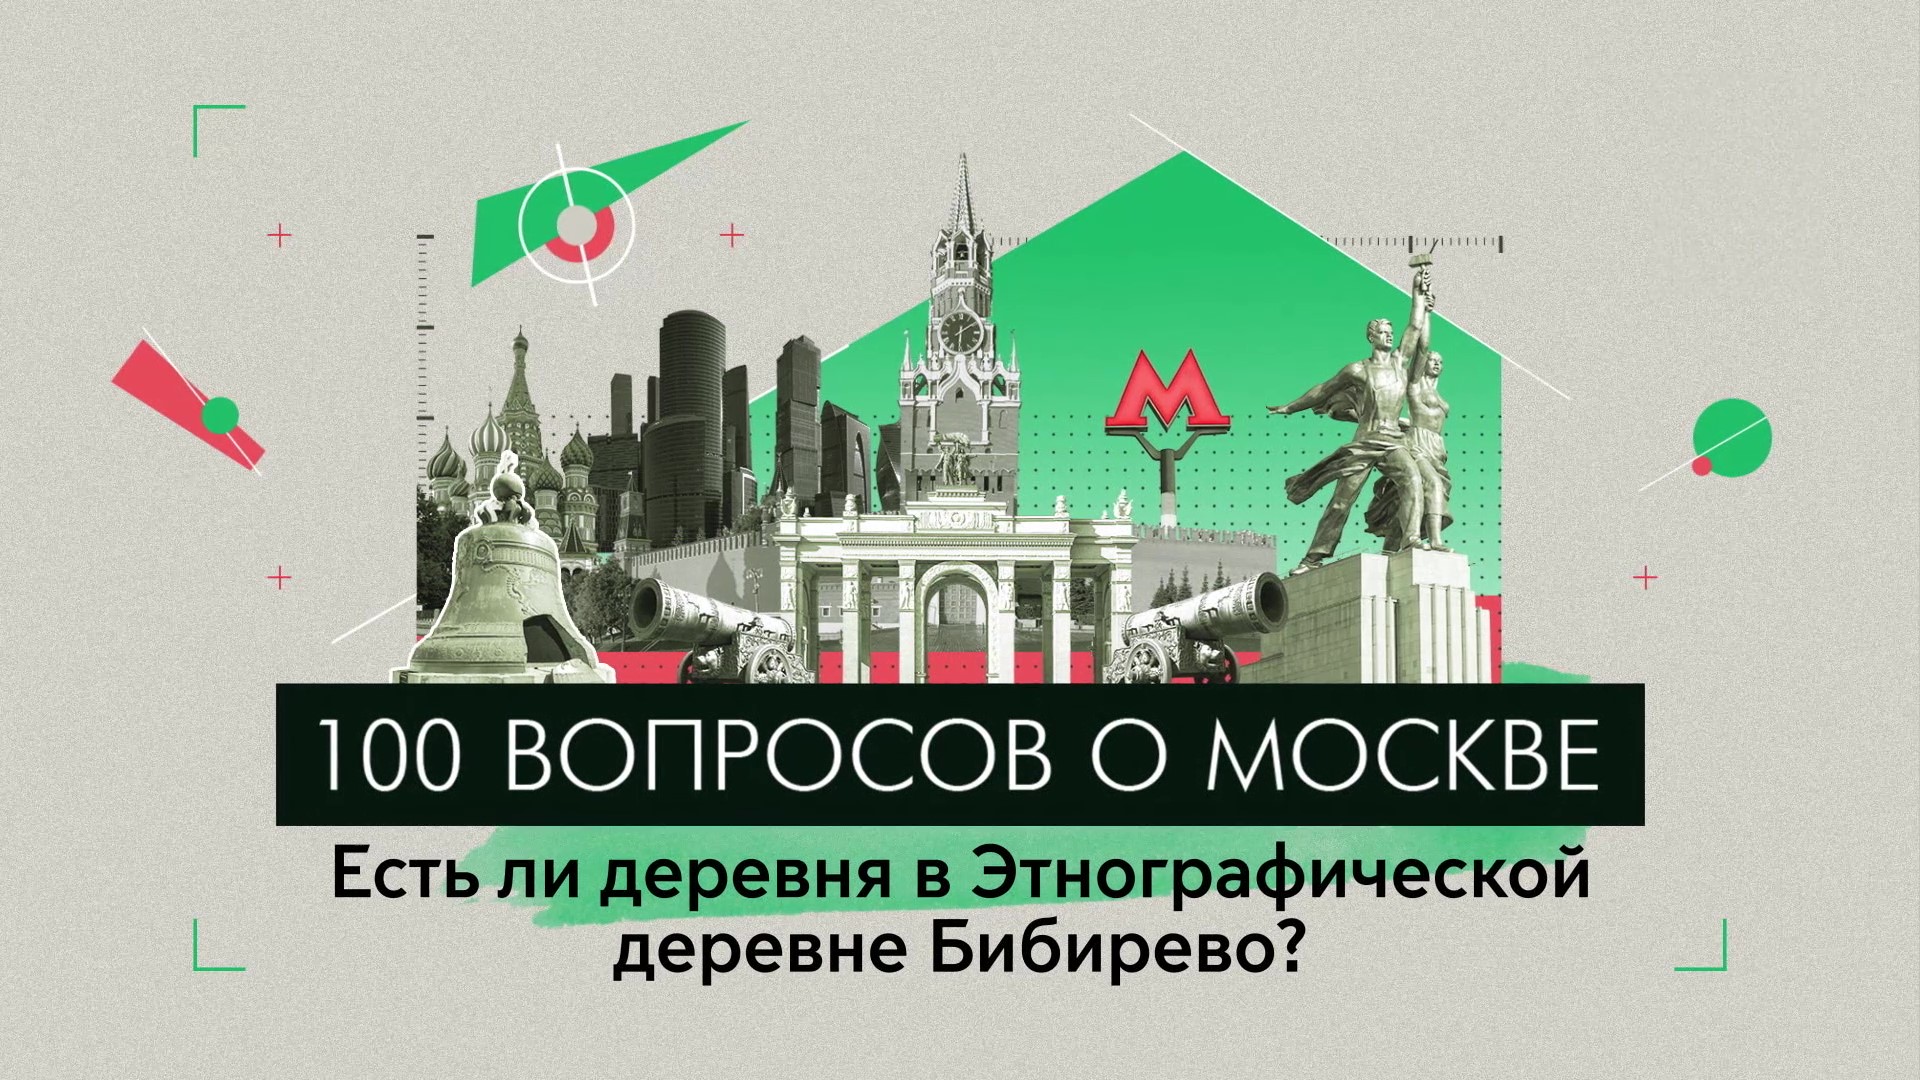 100 вопросов о Москве: Есть ли деревня в этнографической деревне Бибирево?